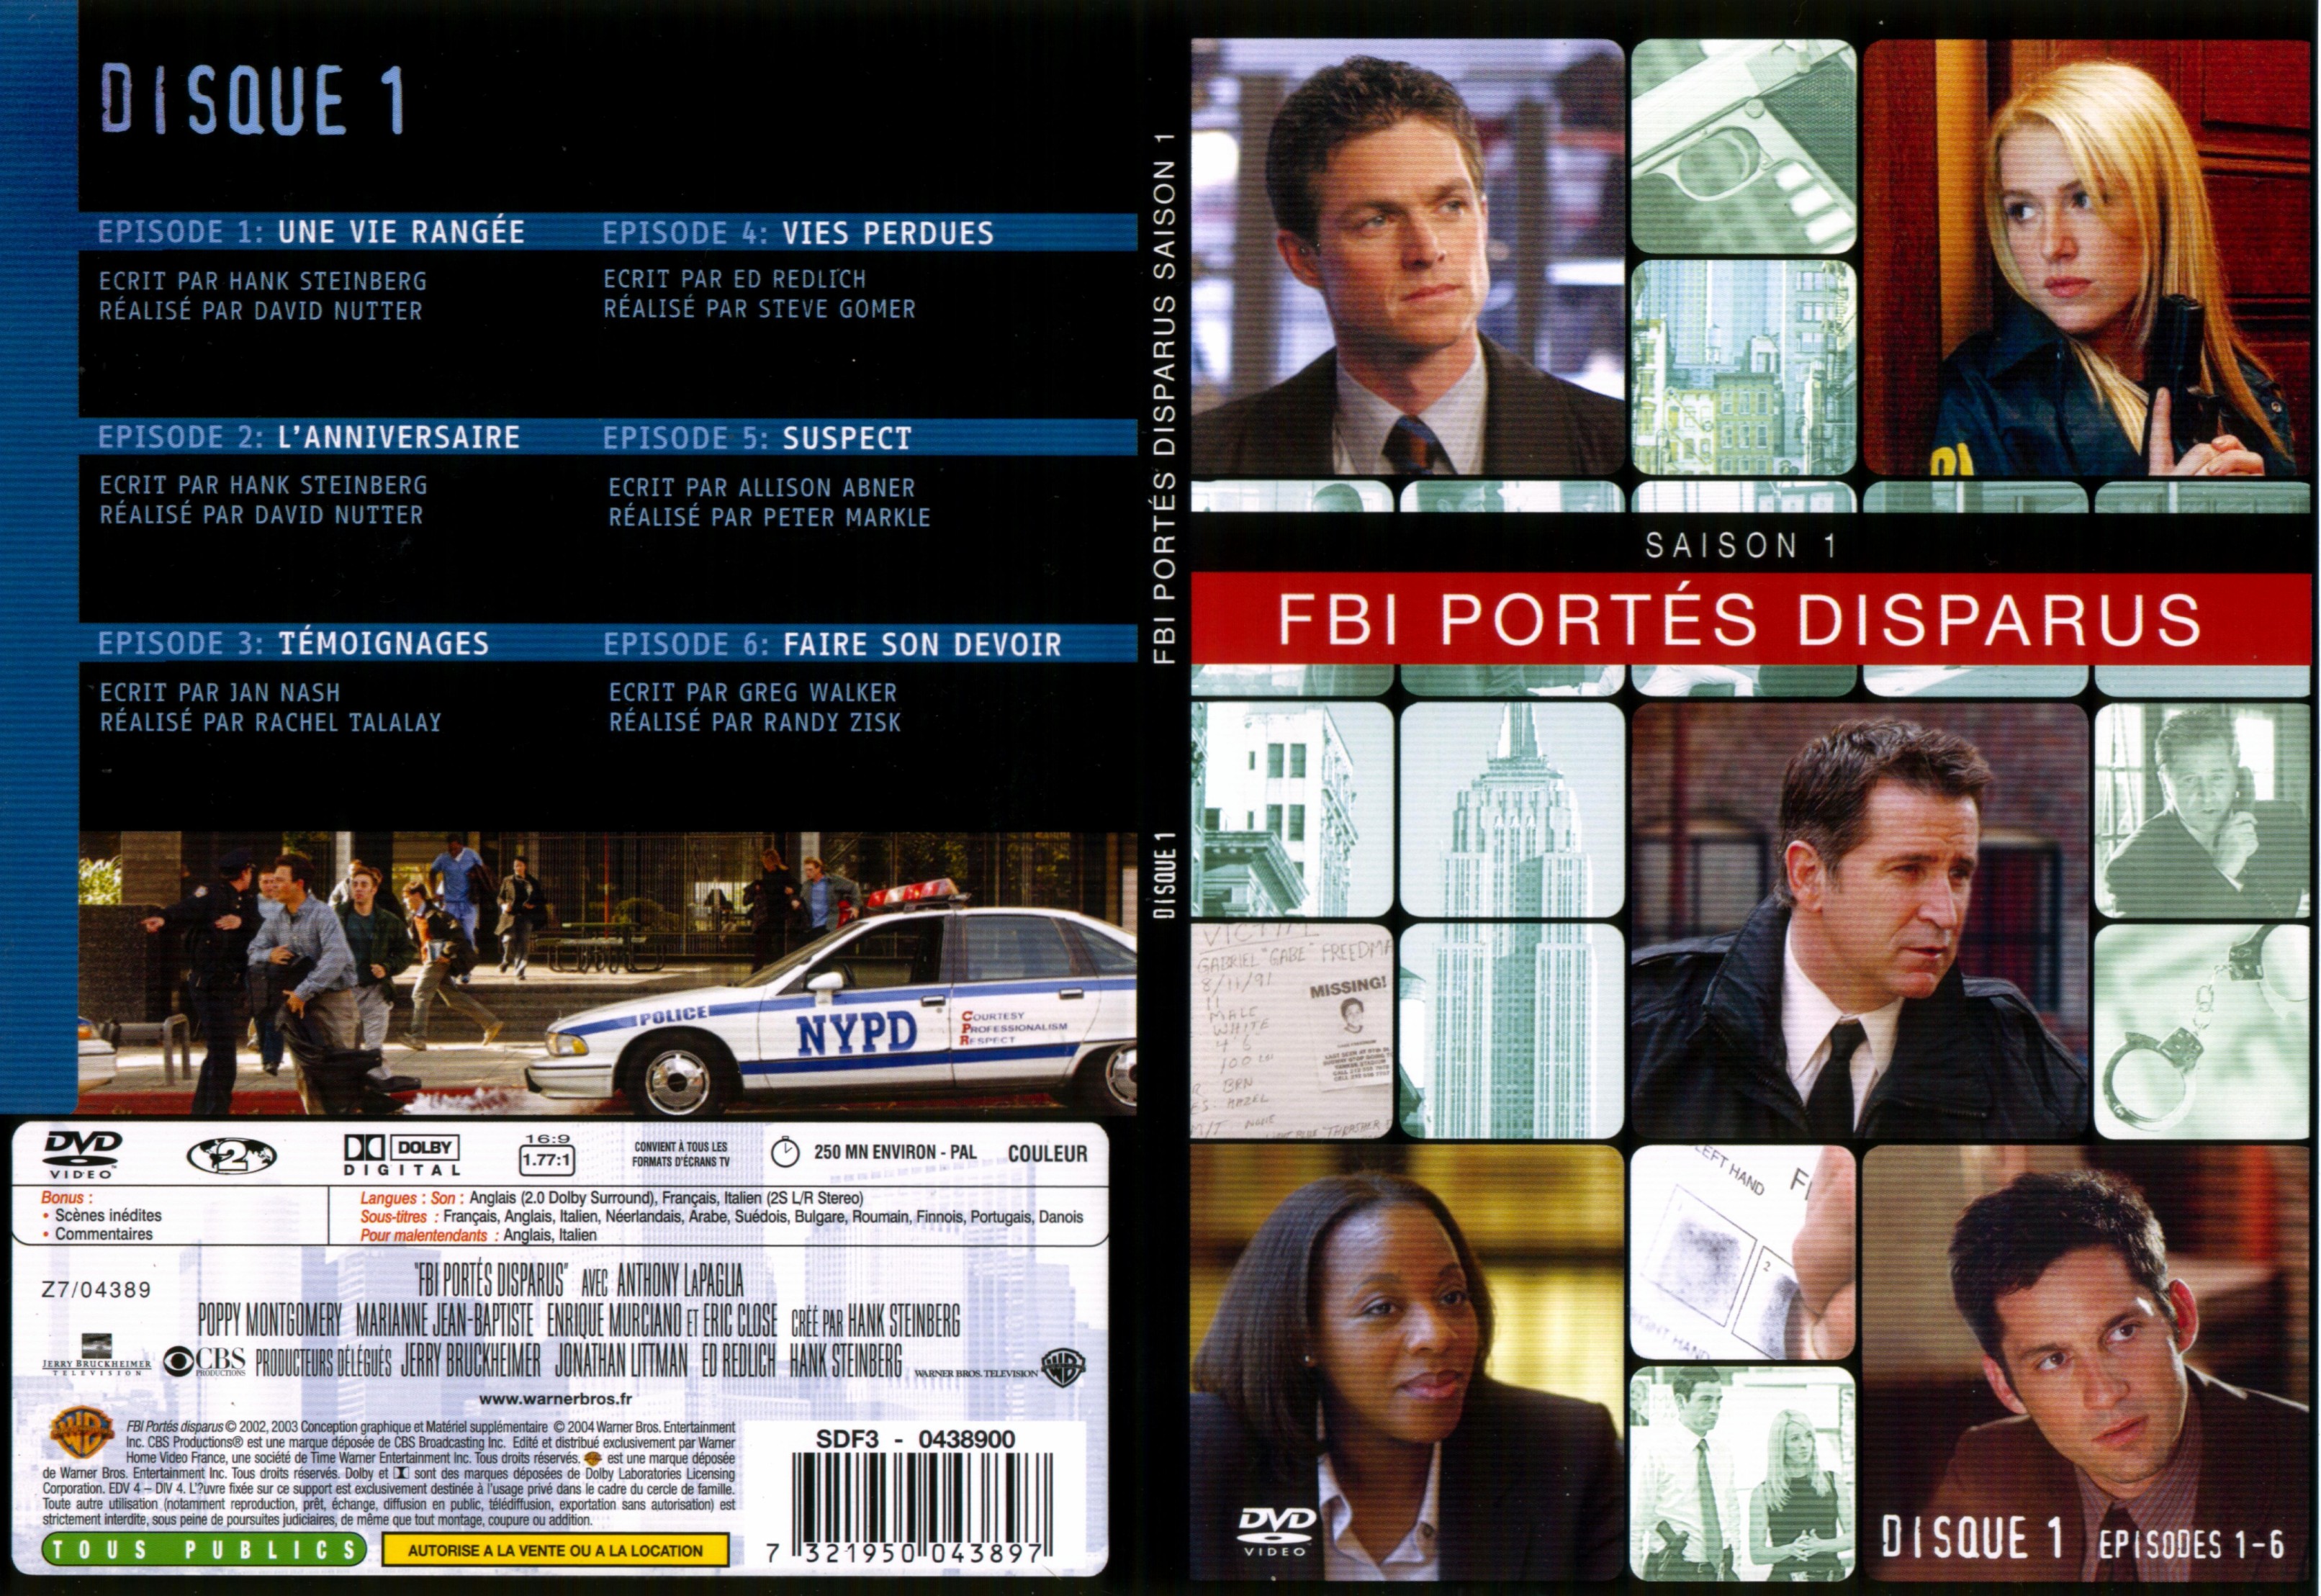 Jaquette DVD FBI ports disparus Saison 1 vol 1